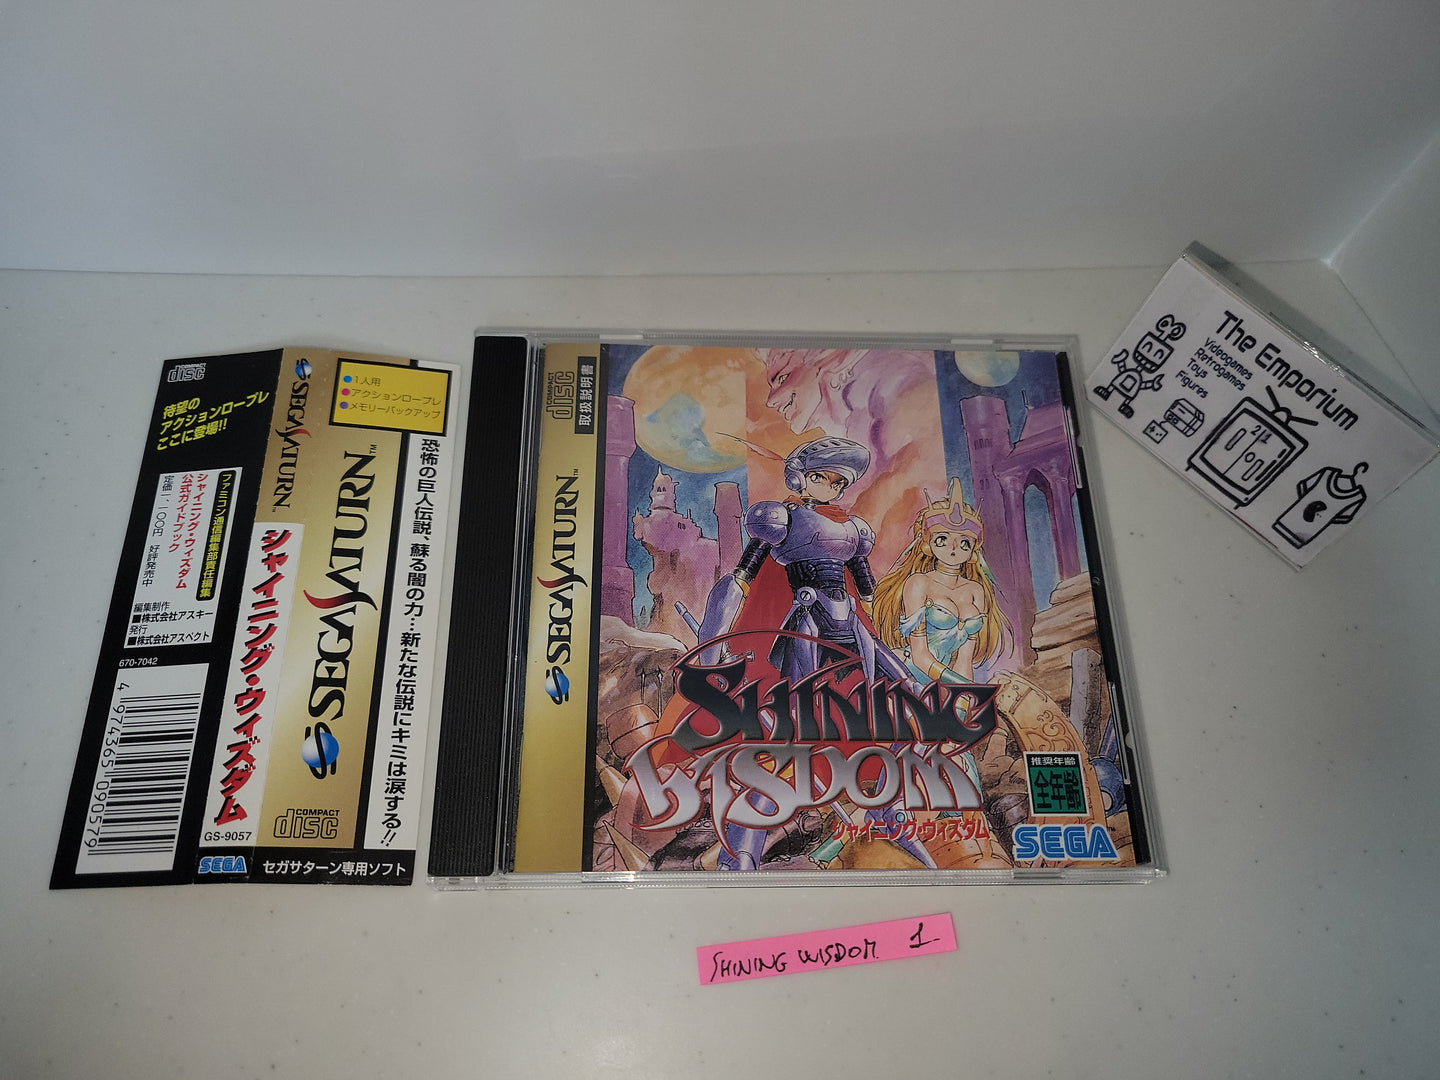 Shining Wisdom - Sega Saturn sat stn